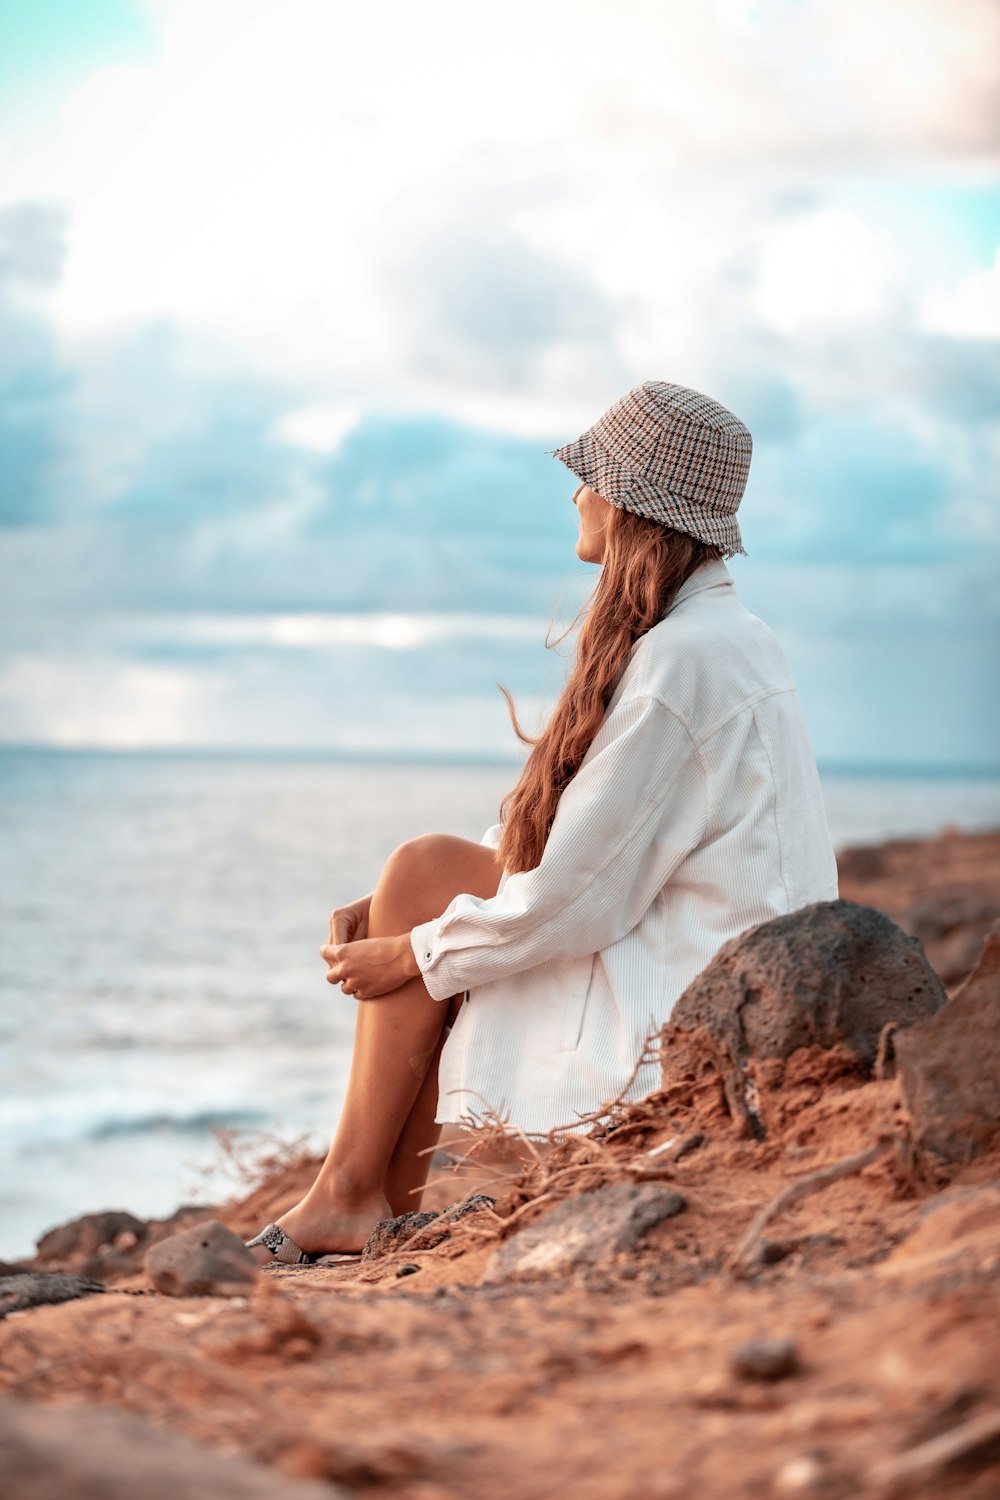 흰색 긴 소매 셔츠와 흰색 모자를 쓴 여자가 온 (On On) 몸 근처의 갈색 바위에 앉아 있다